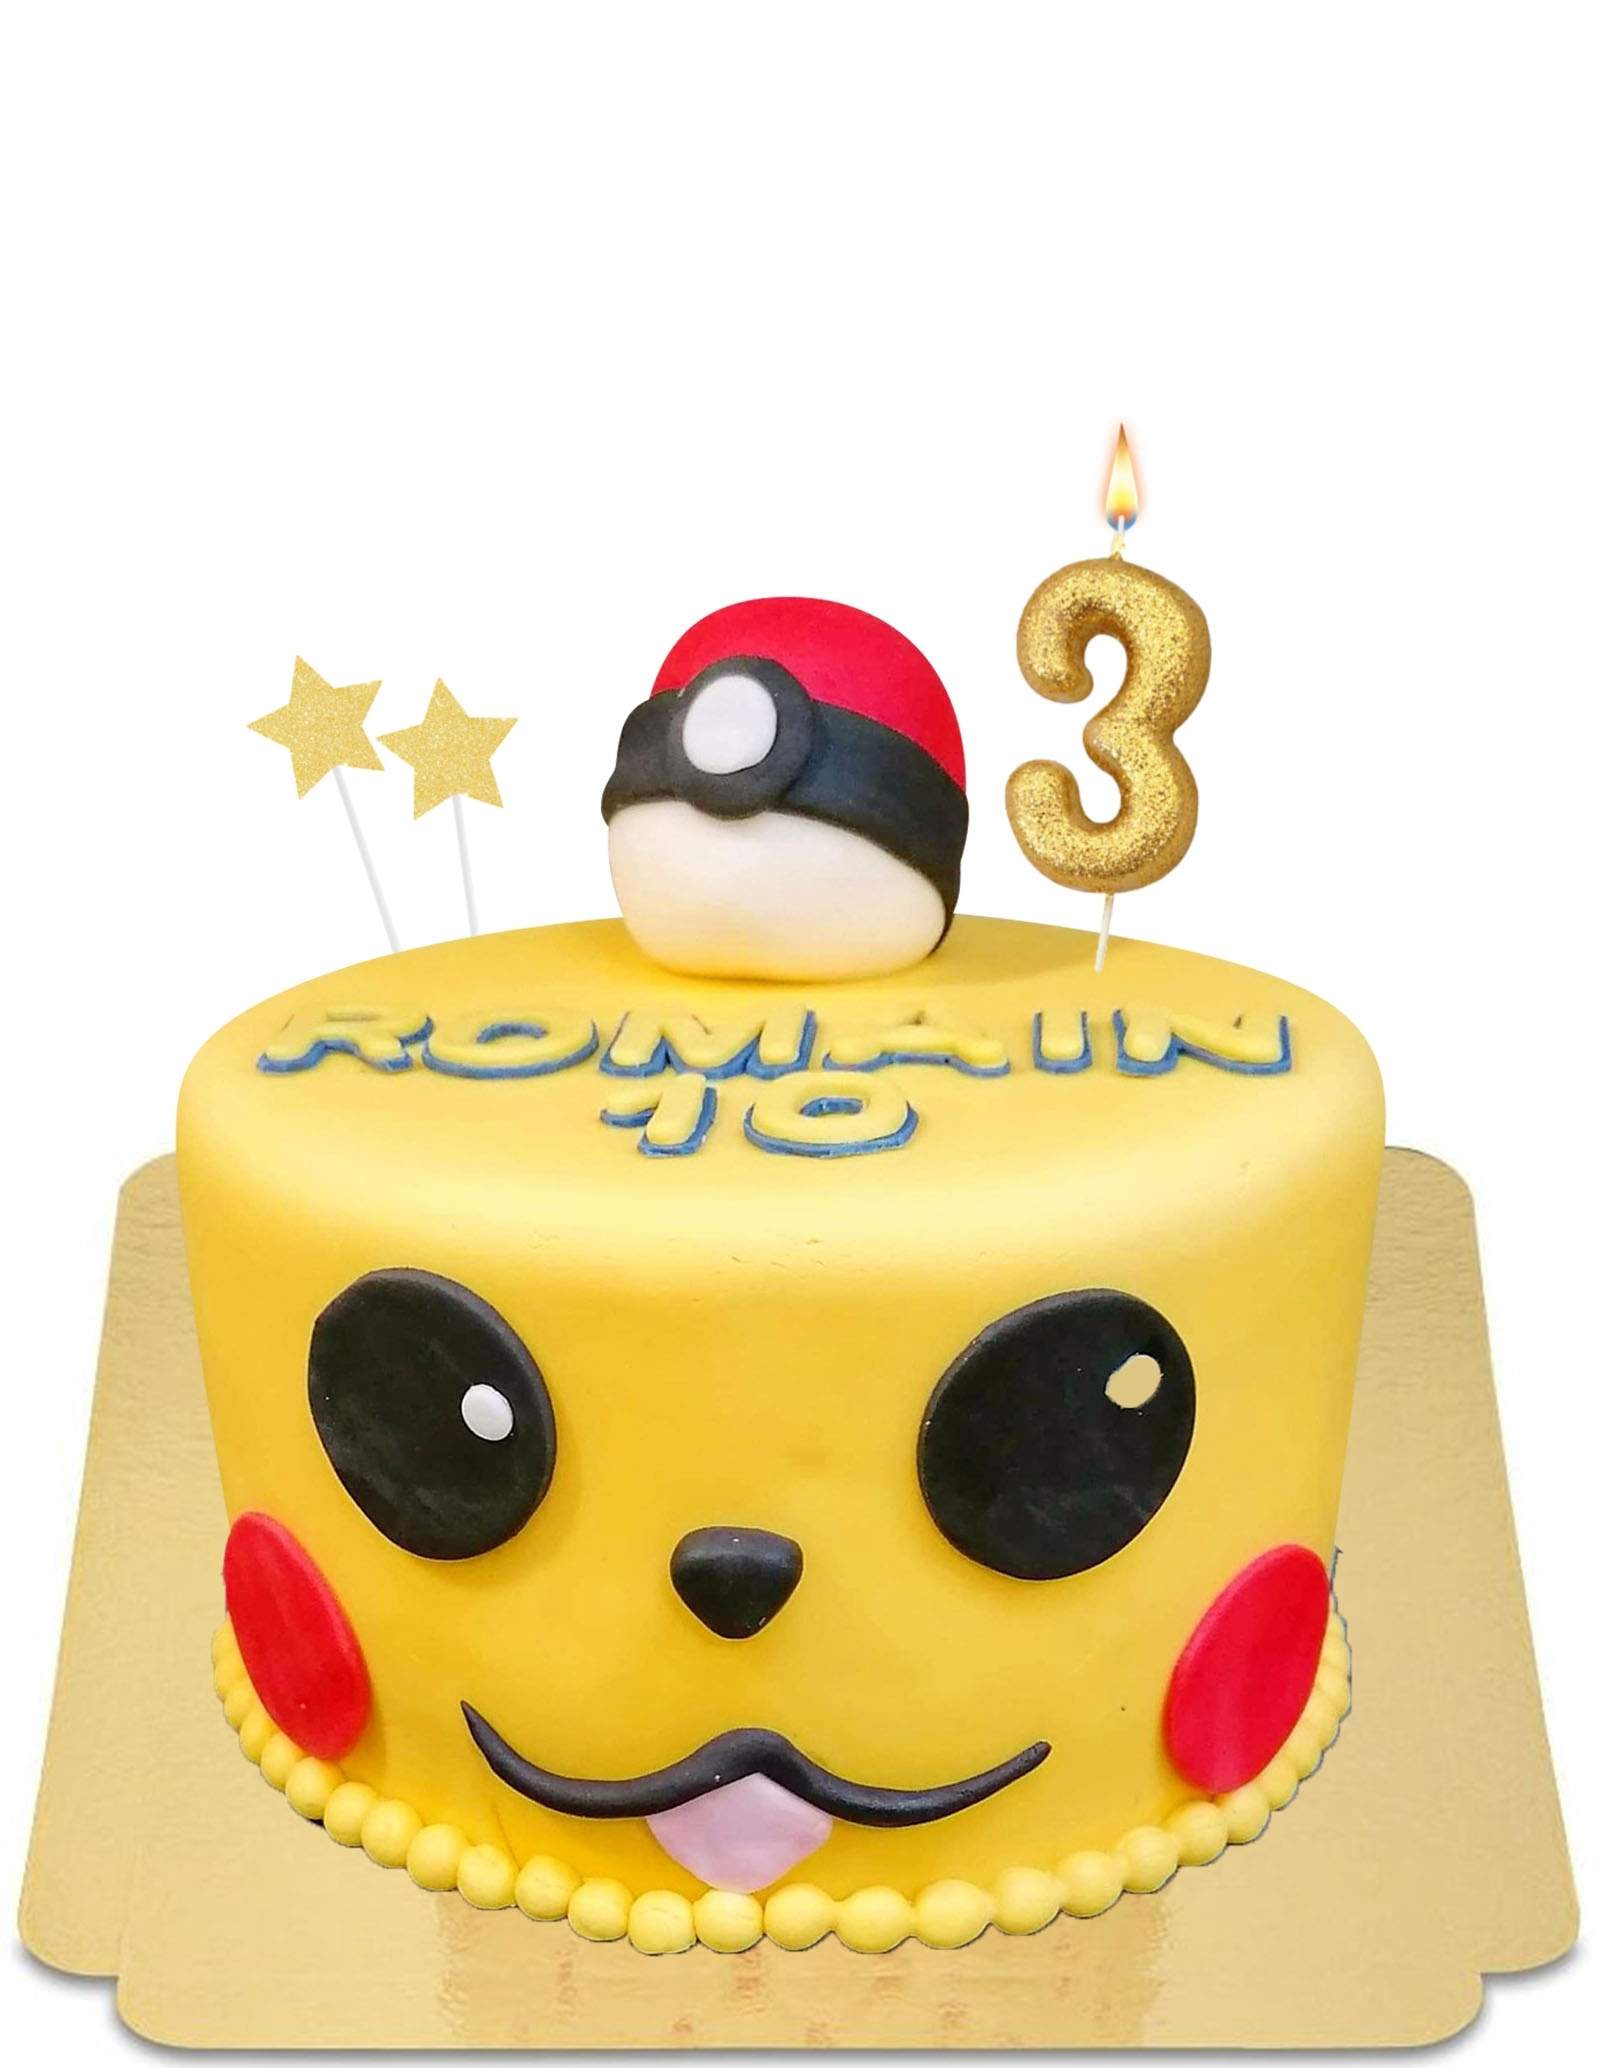 Gâteau Pokemon Pikachu - Sugar Rush Cakes